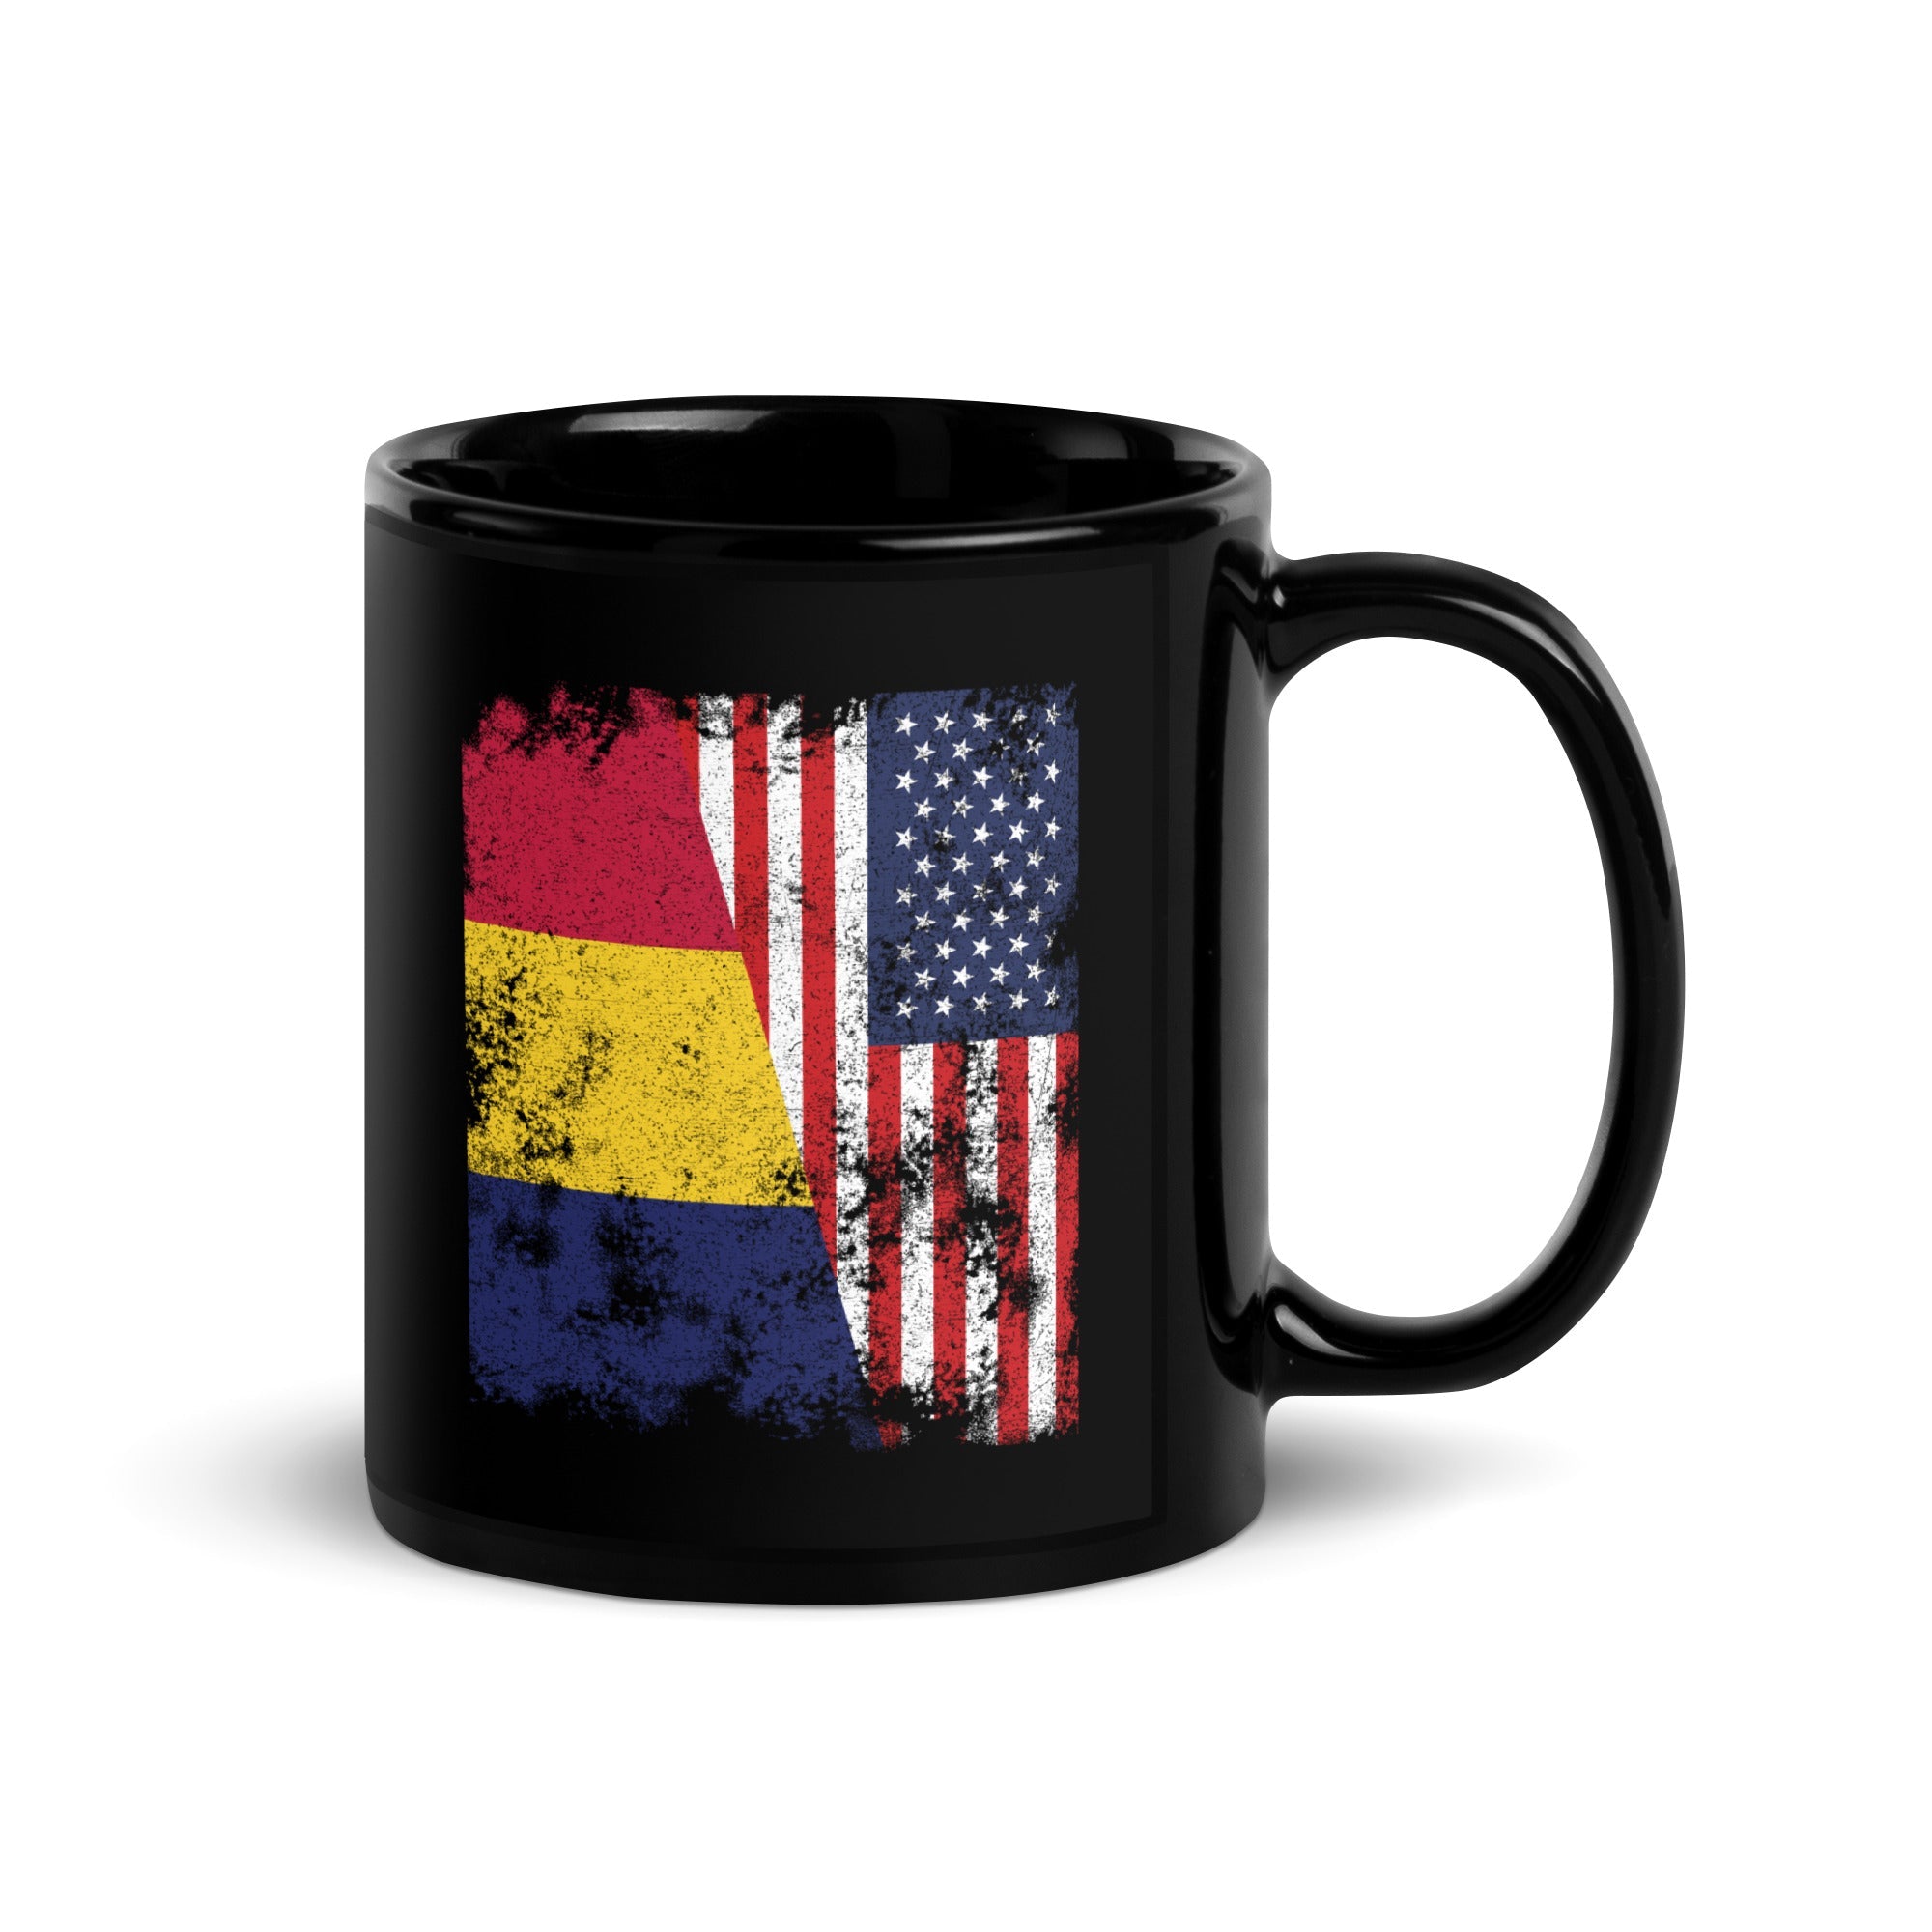 Chad USA Flag - Half American Mug